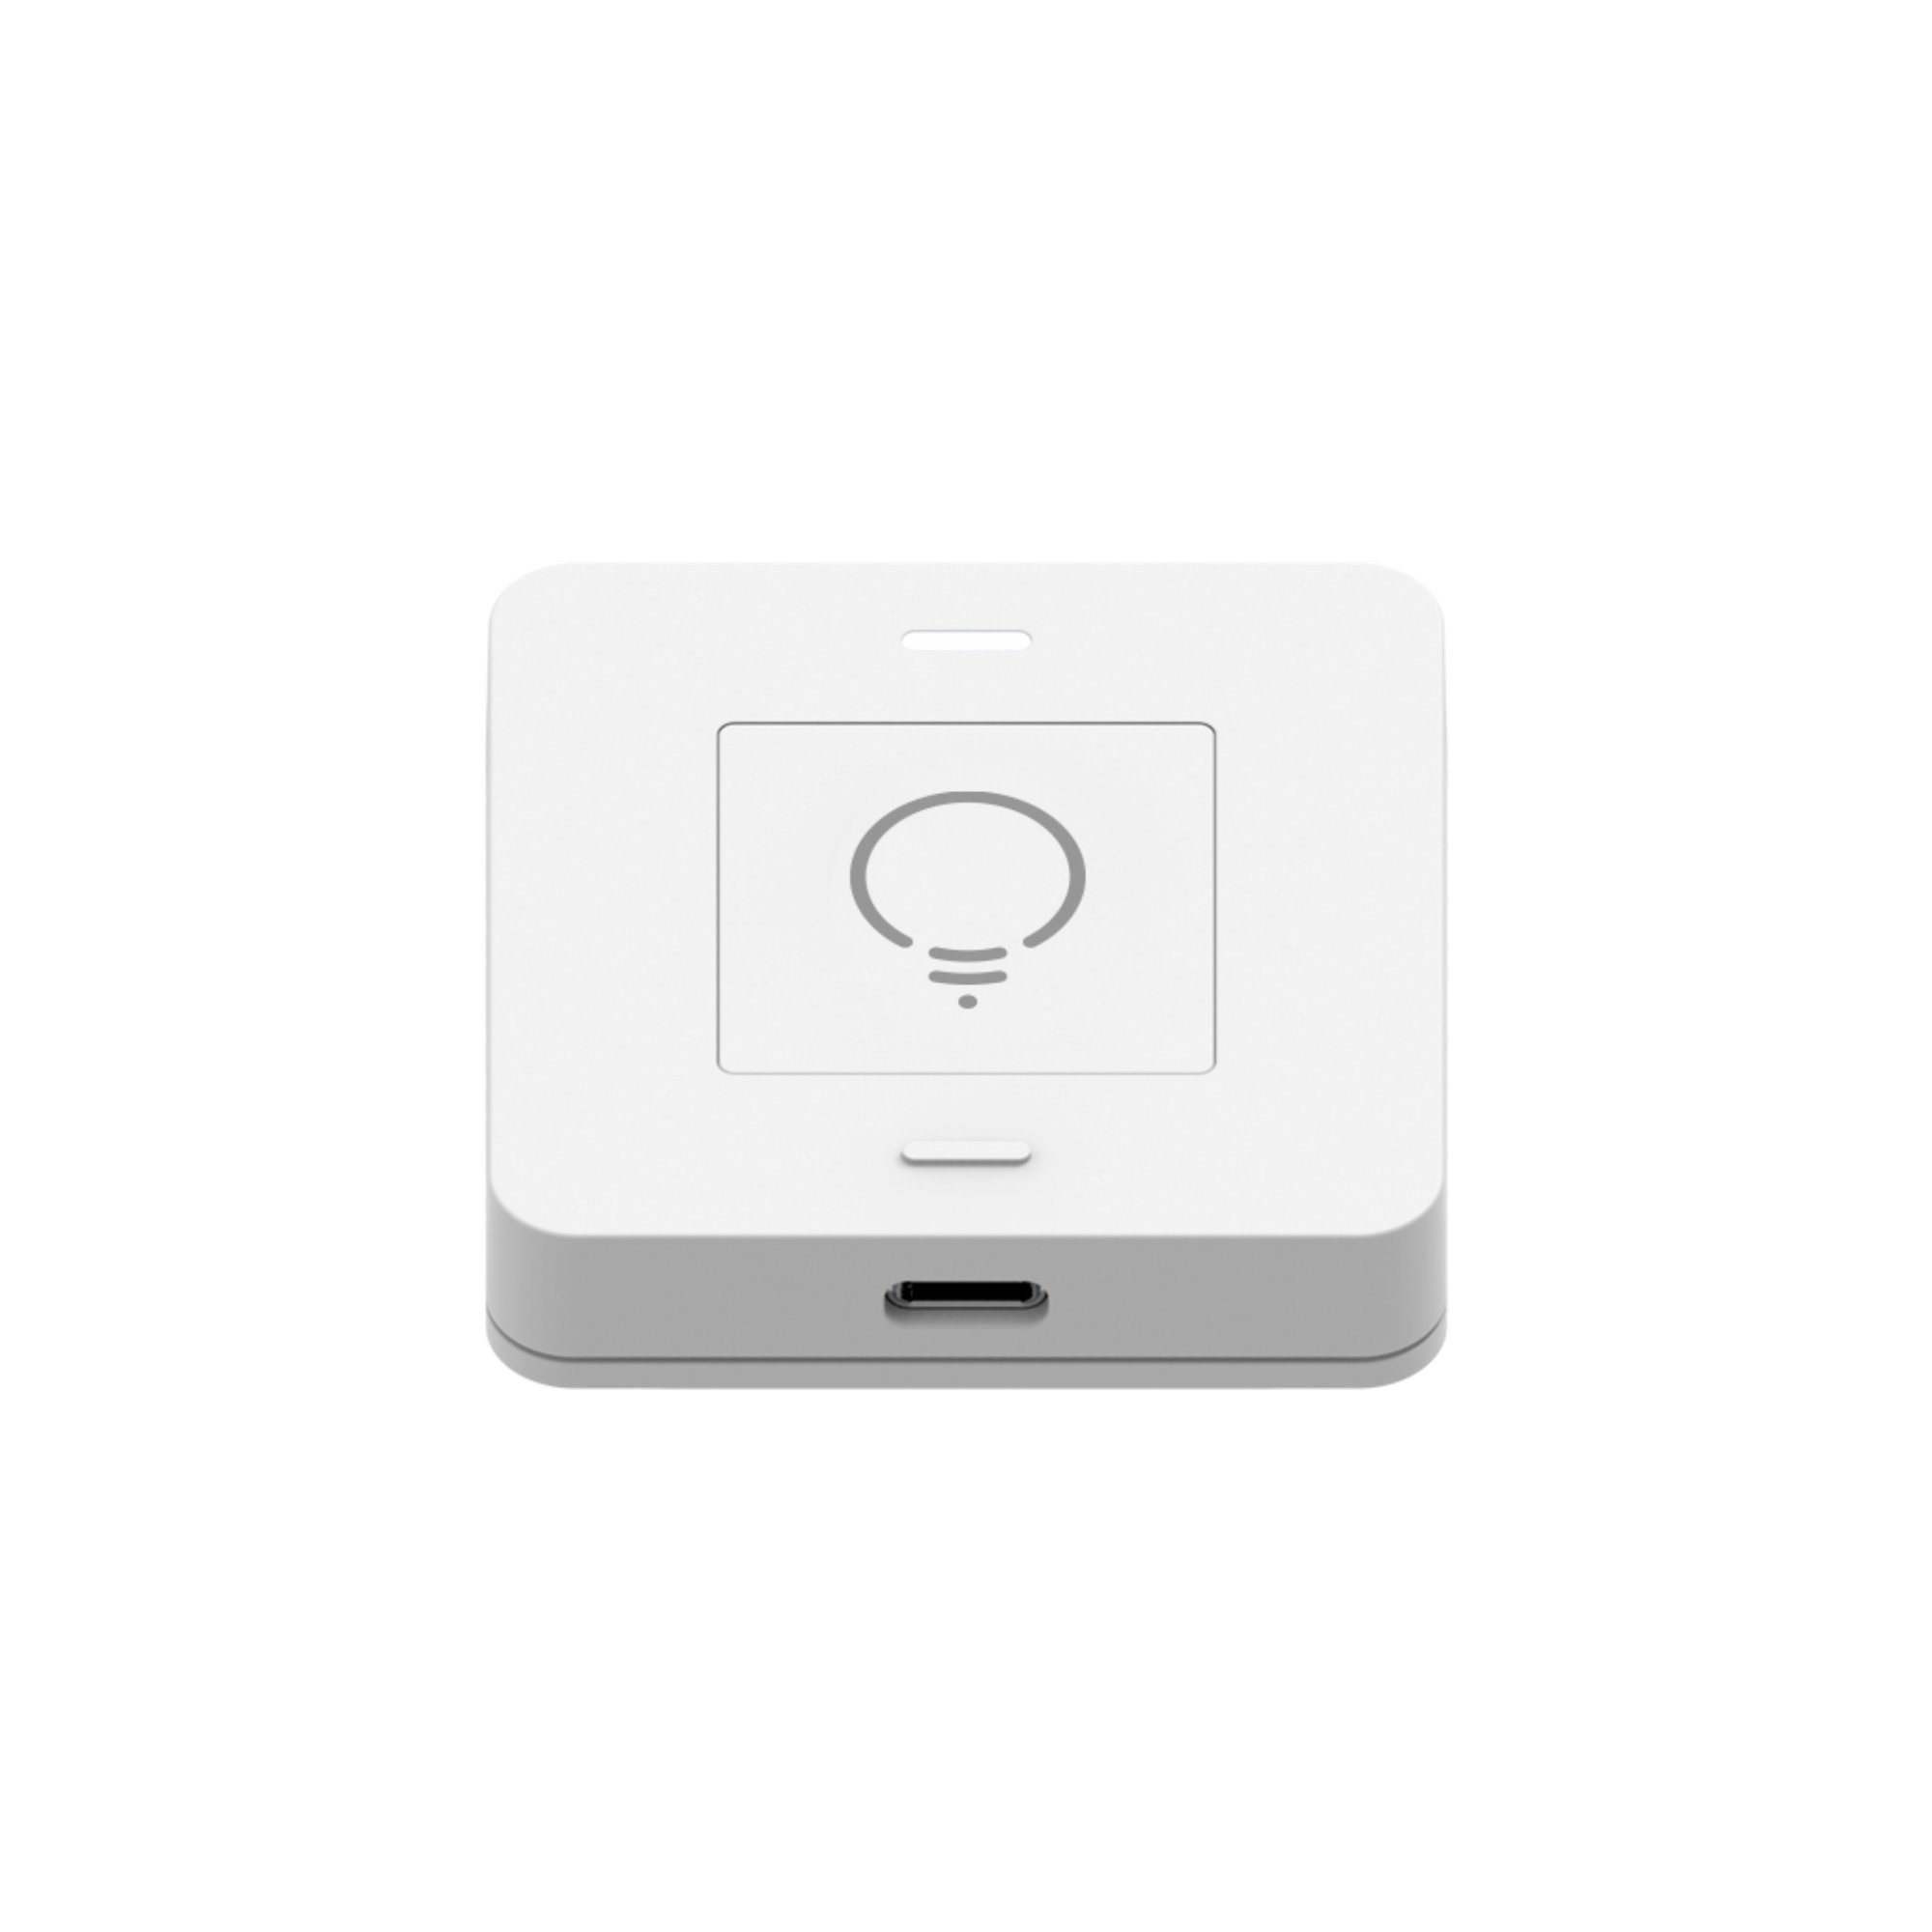 myStrom mit 12 Plus, Steuerung Smart-Home-Steuerelement Button Funktionen zu Smart Home WiFi